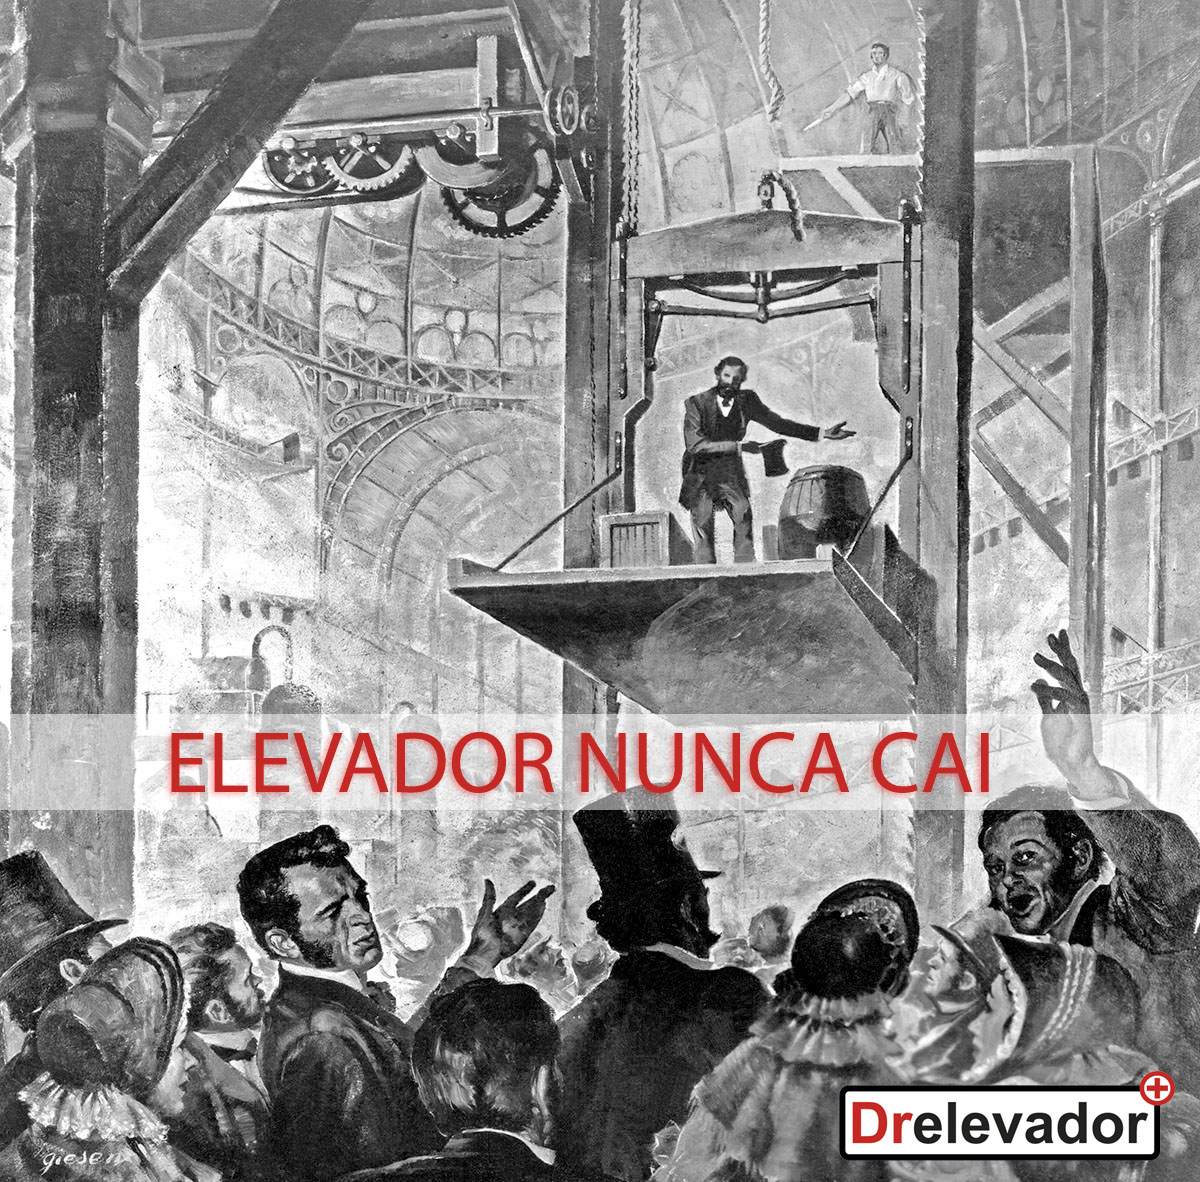 Elisha Graves Otis demonstrando o freio de segurança do Elevator em 1900 em Nova Iorque, provando que elevador nunca cai. Matéria de Drelevador